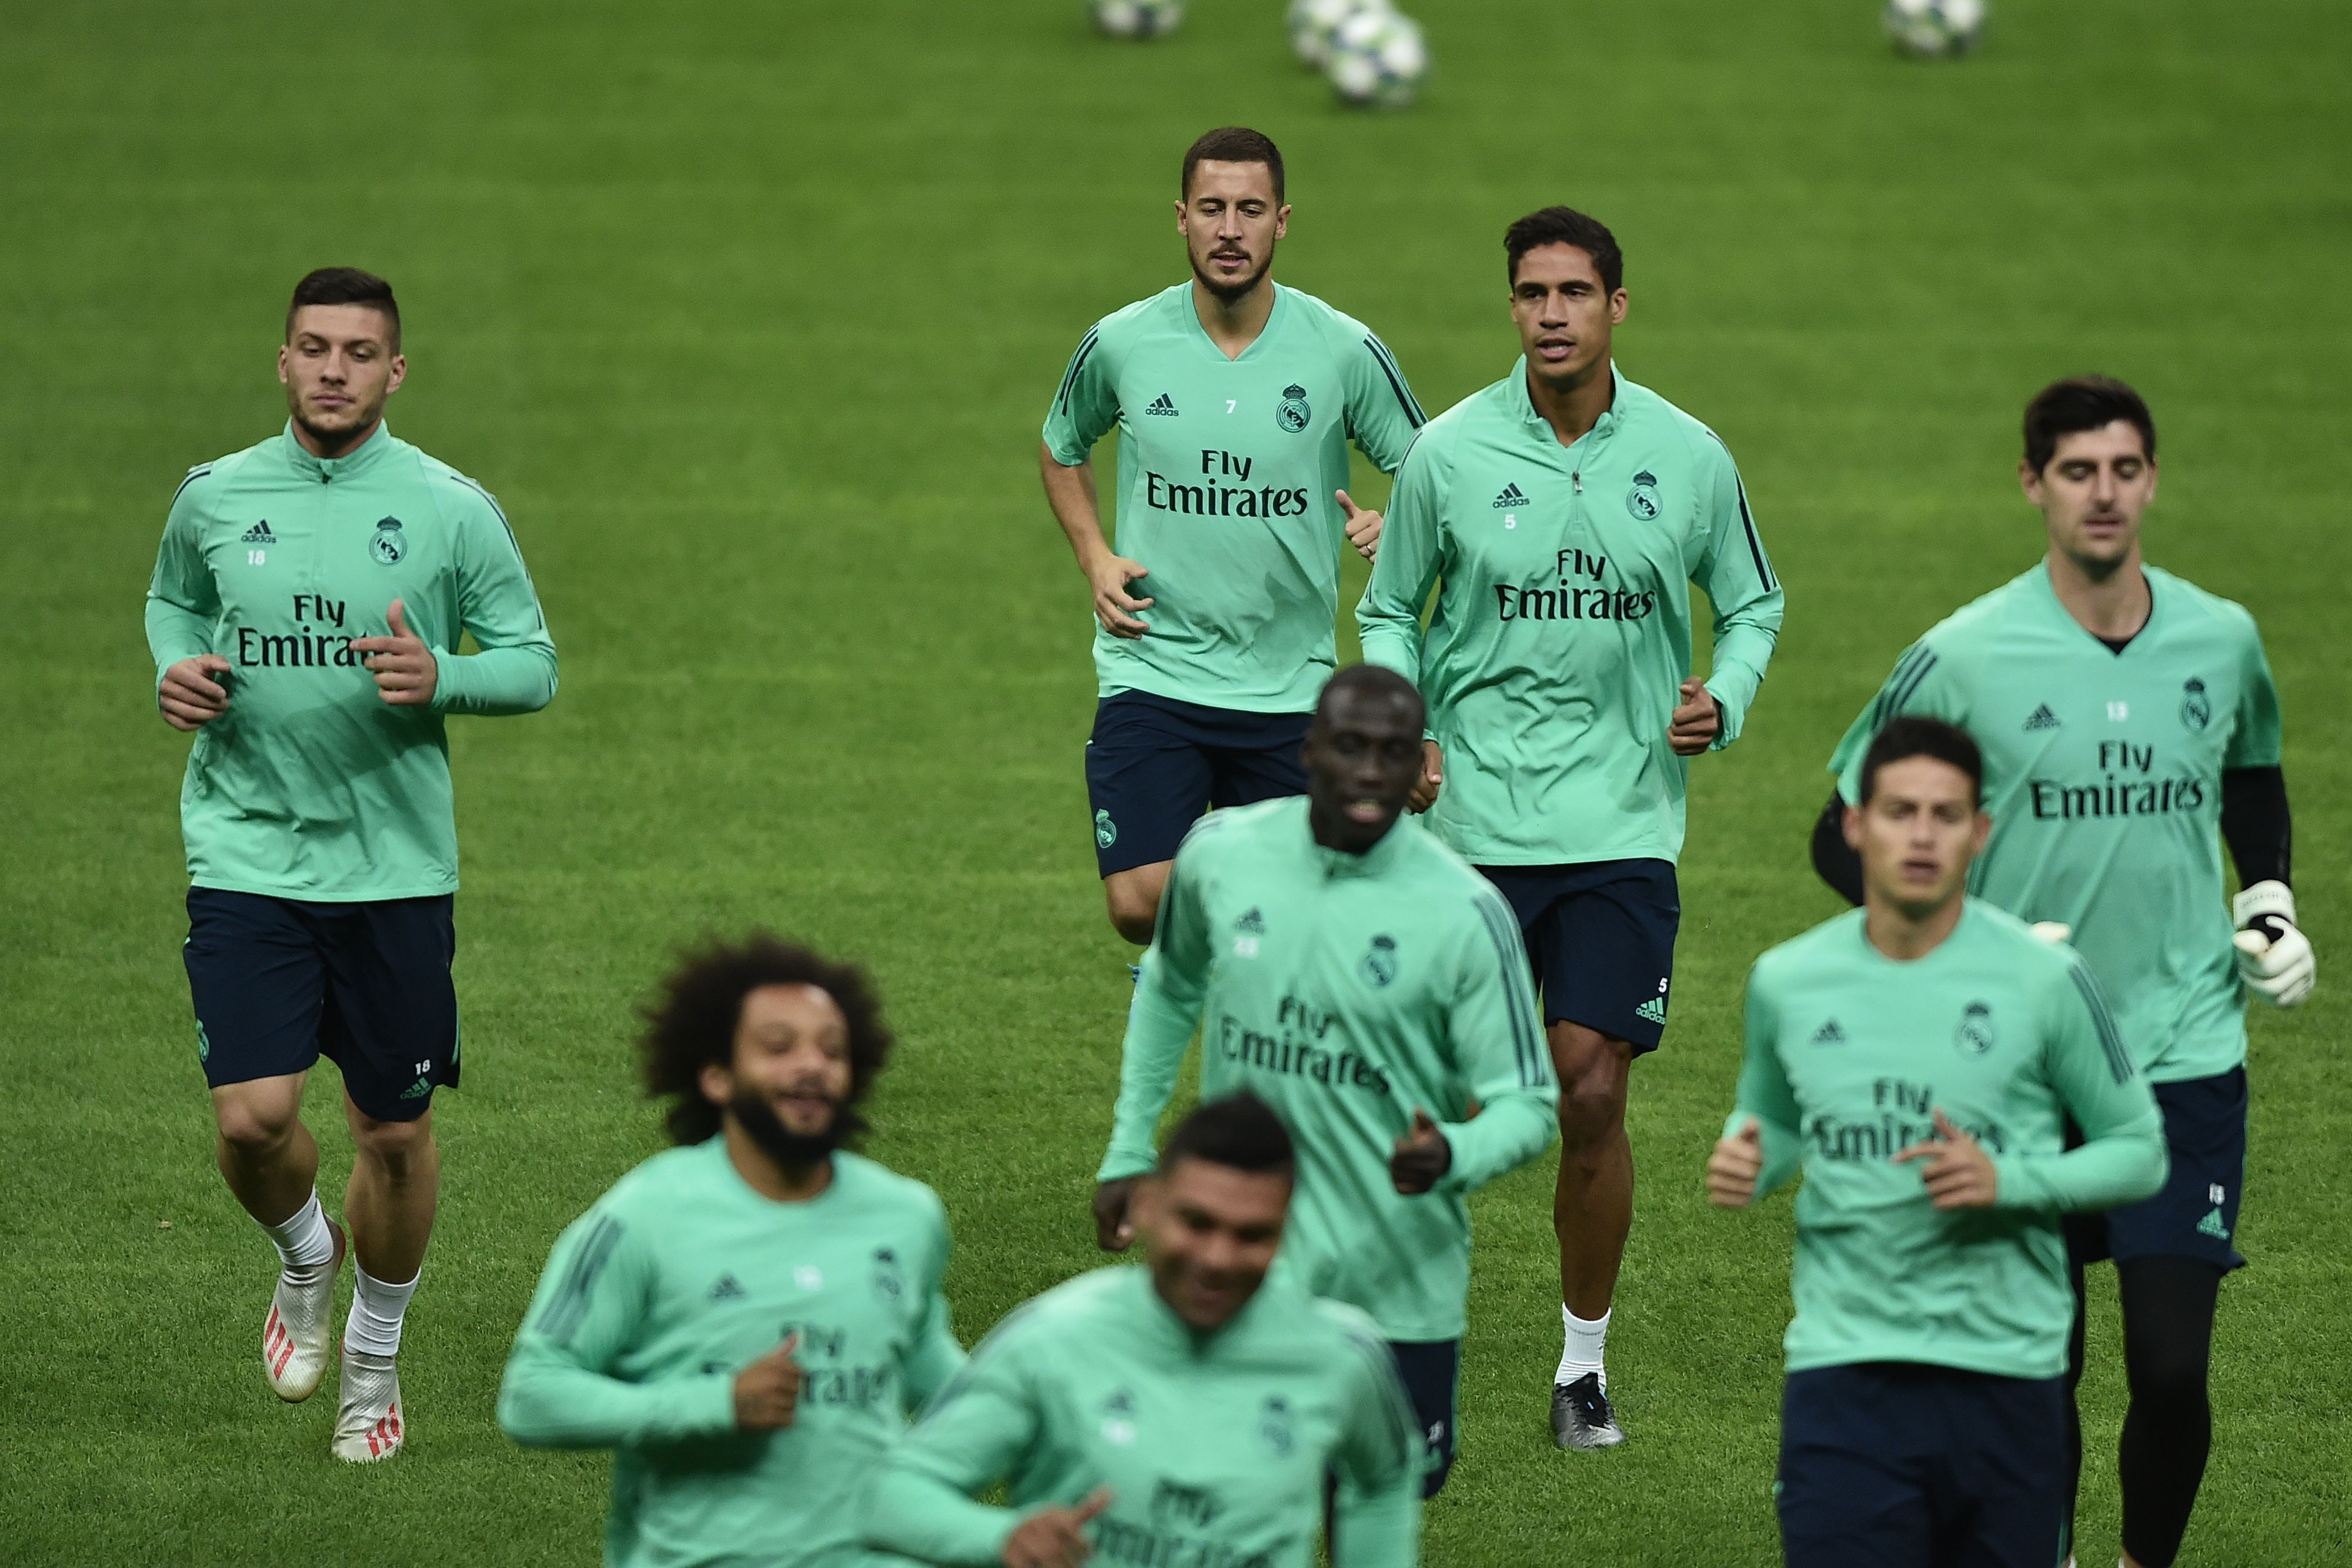 El Real Madrid, durante su entrenamiento, previo a afrontar la Champions League. (Foto Prensa Libre: AFP)